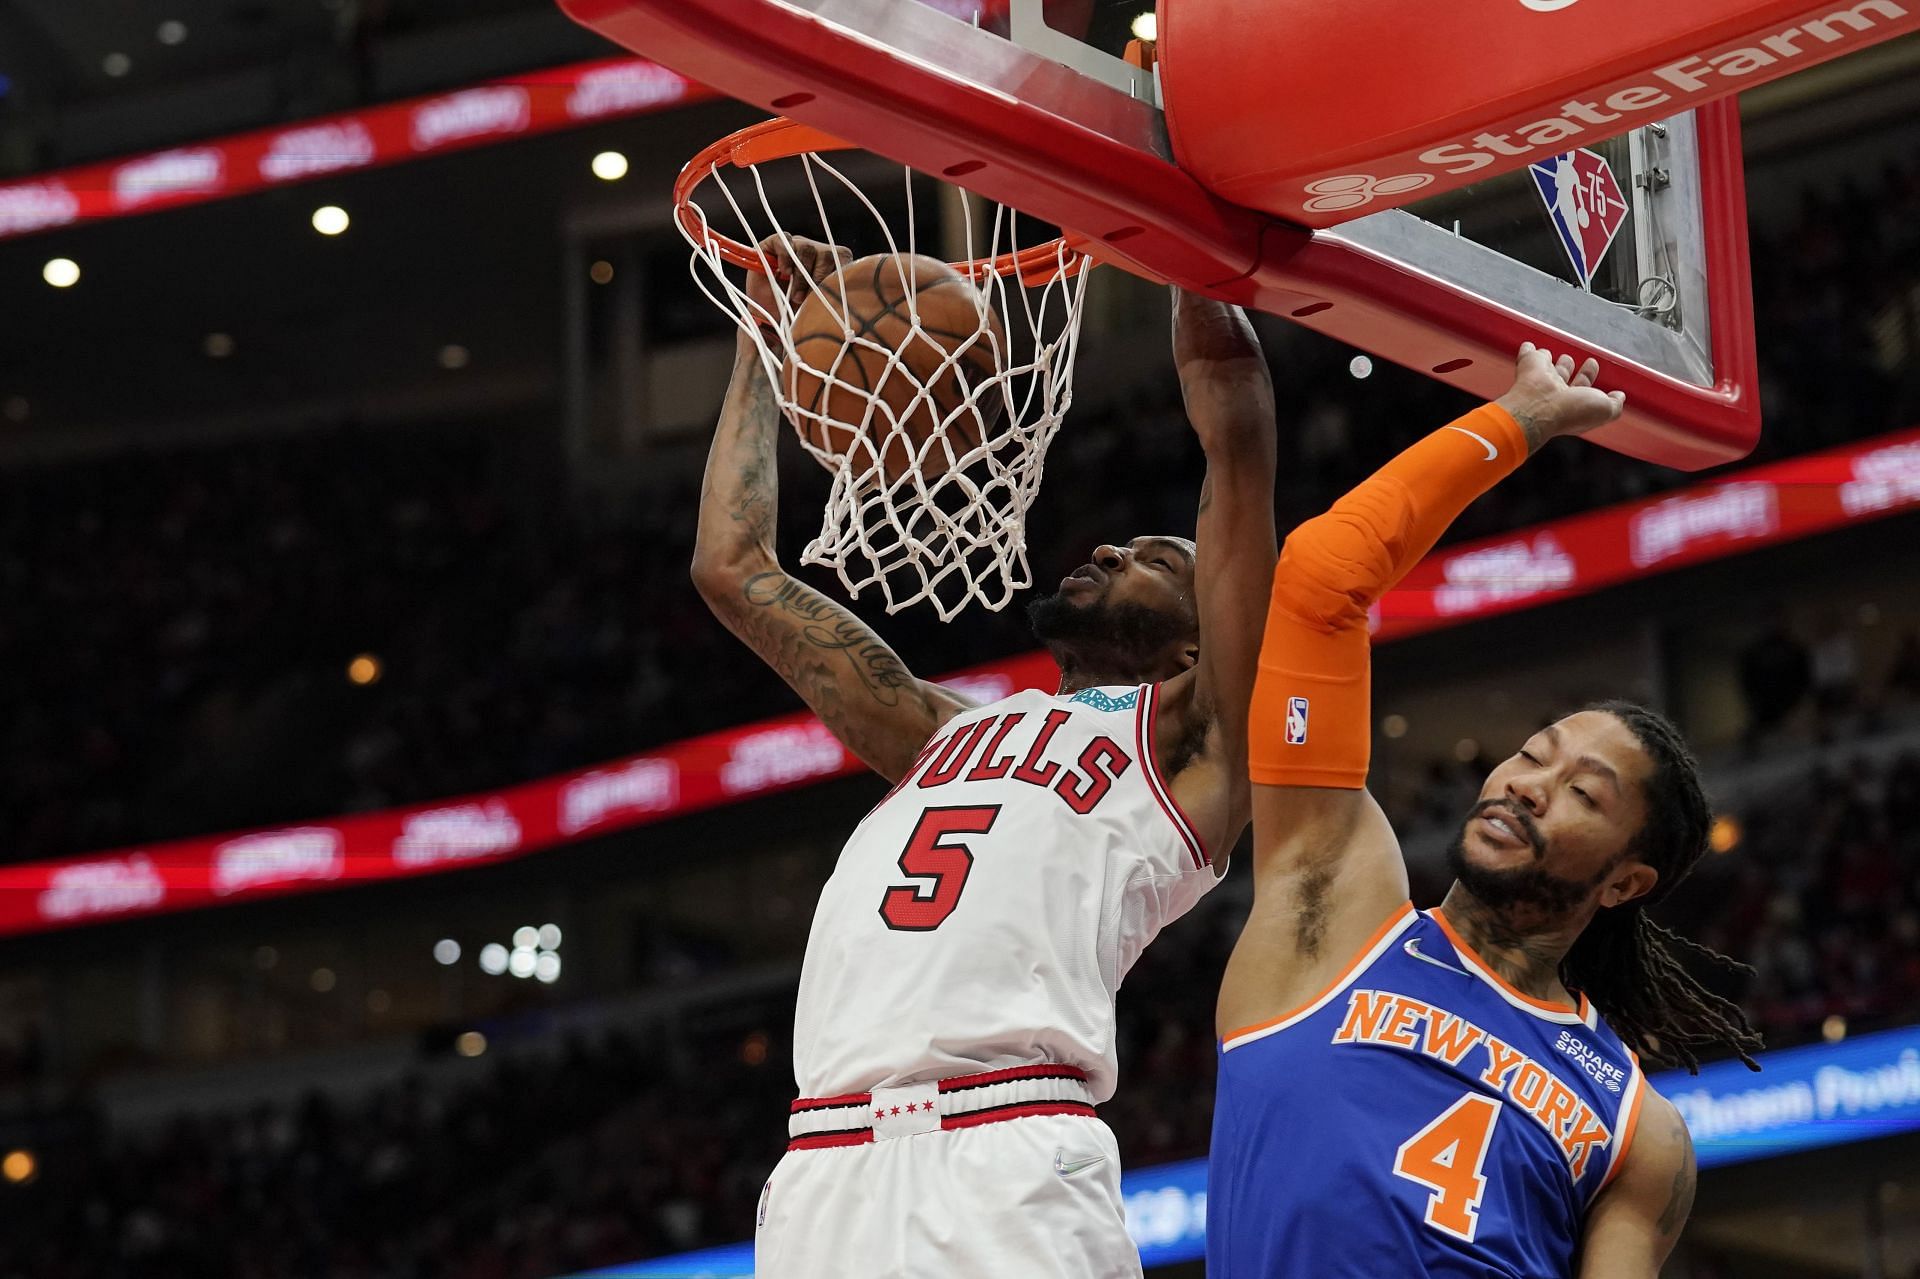 Derrick Rose of the New York Knicks (R) against the Chicago Bulls